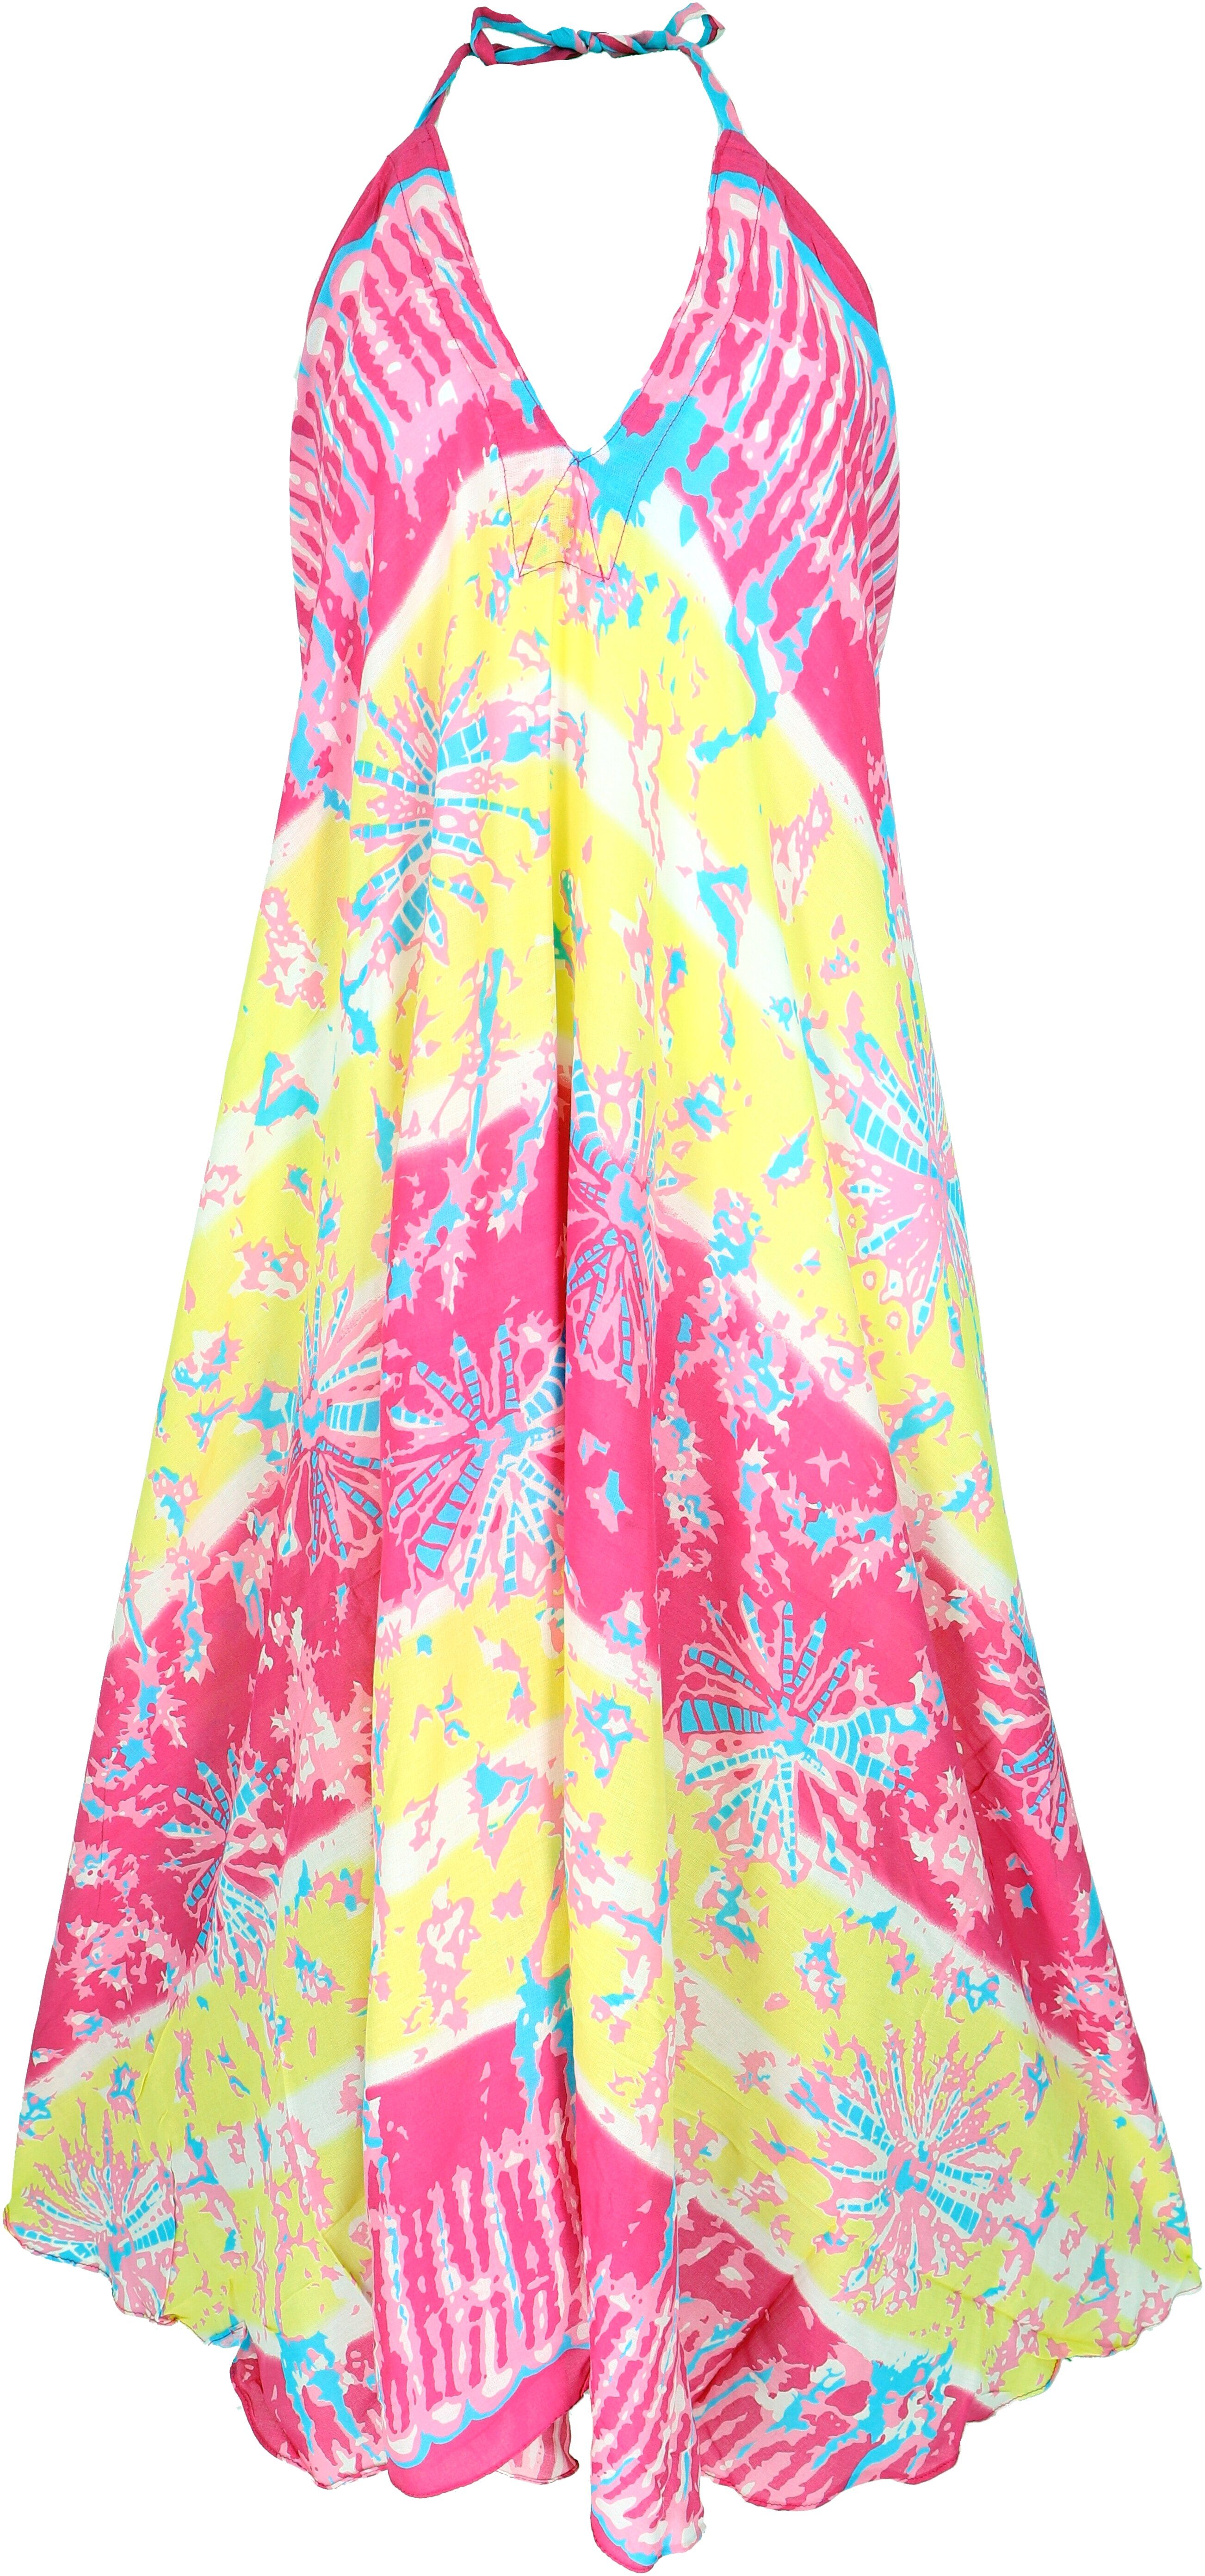 Batik-Druck,.. alternative Sommerkleid, Maxikleid Midikleid Boho mit Guru-Shop Bekleidung pink